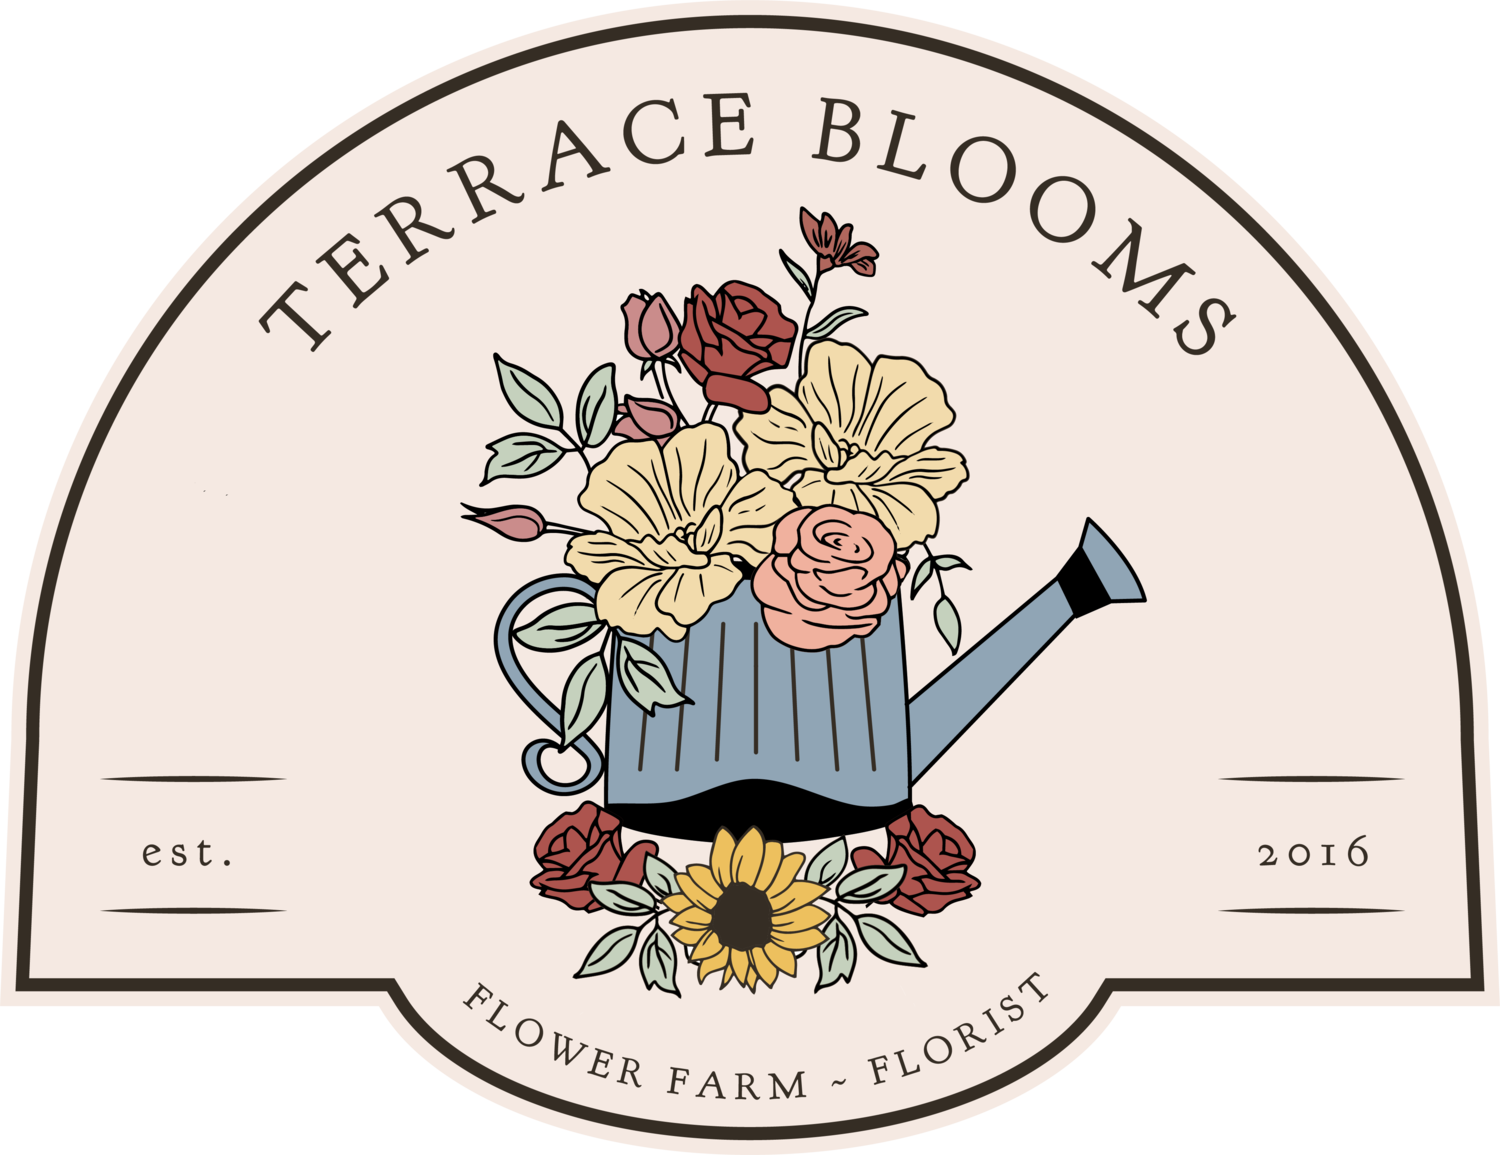 Terrace Blooms Specialty Cut Flowers